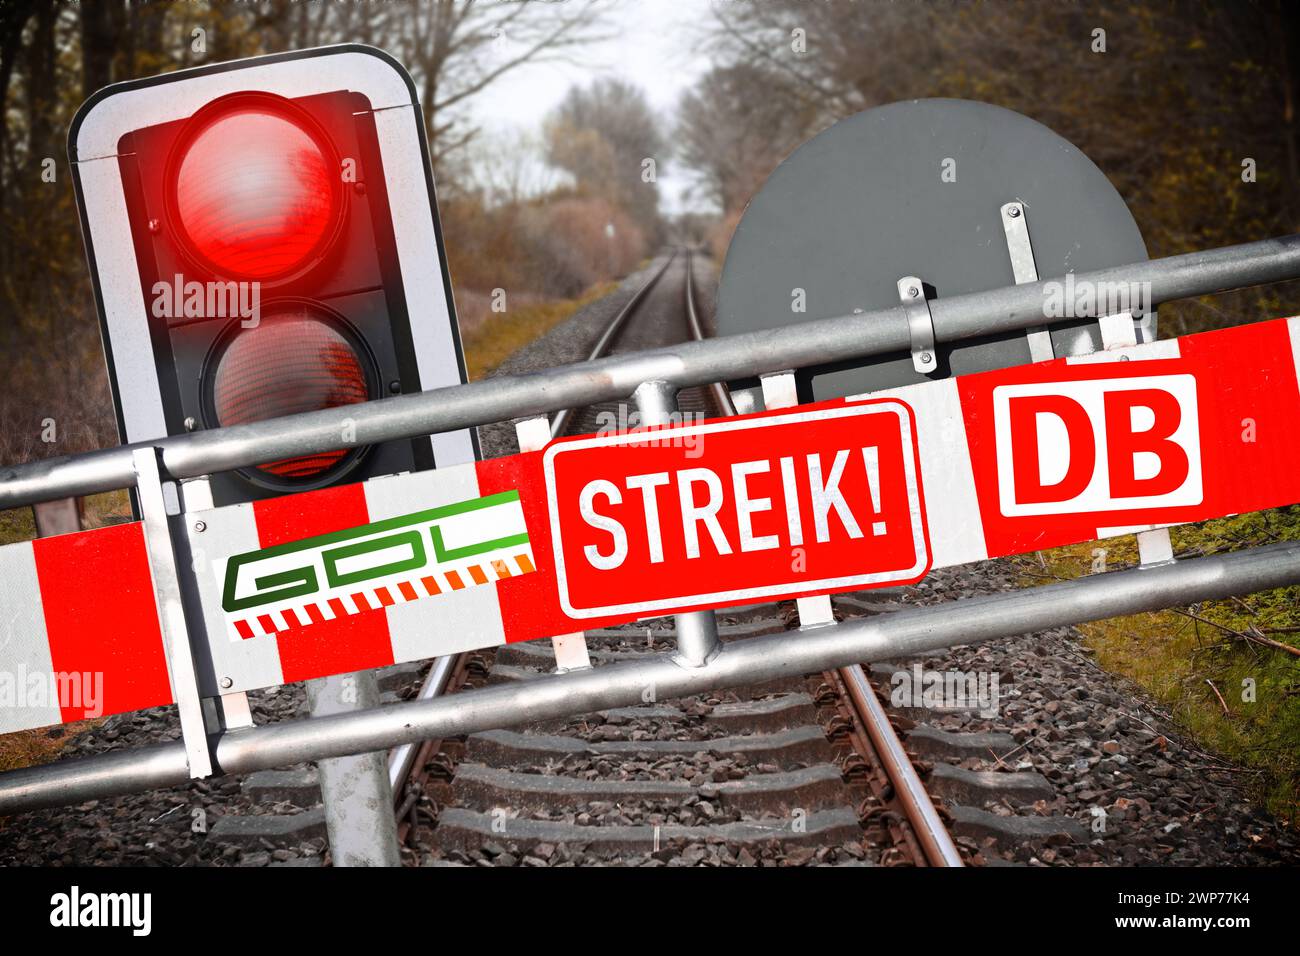 FOTOMONTAGE, Schranke mit Aufschrift Streik, DB und GDL vor leeren Bahnschienen und rotes Haltesignal, Symbolfoto GDL-Streik Foto Stock